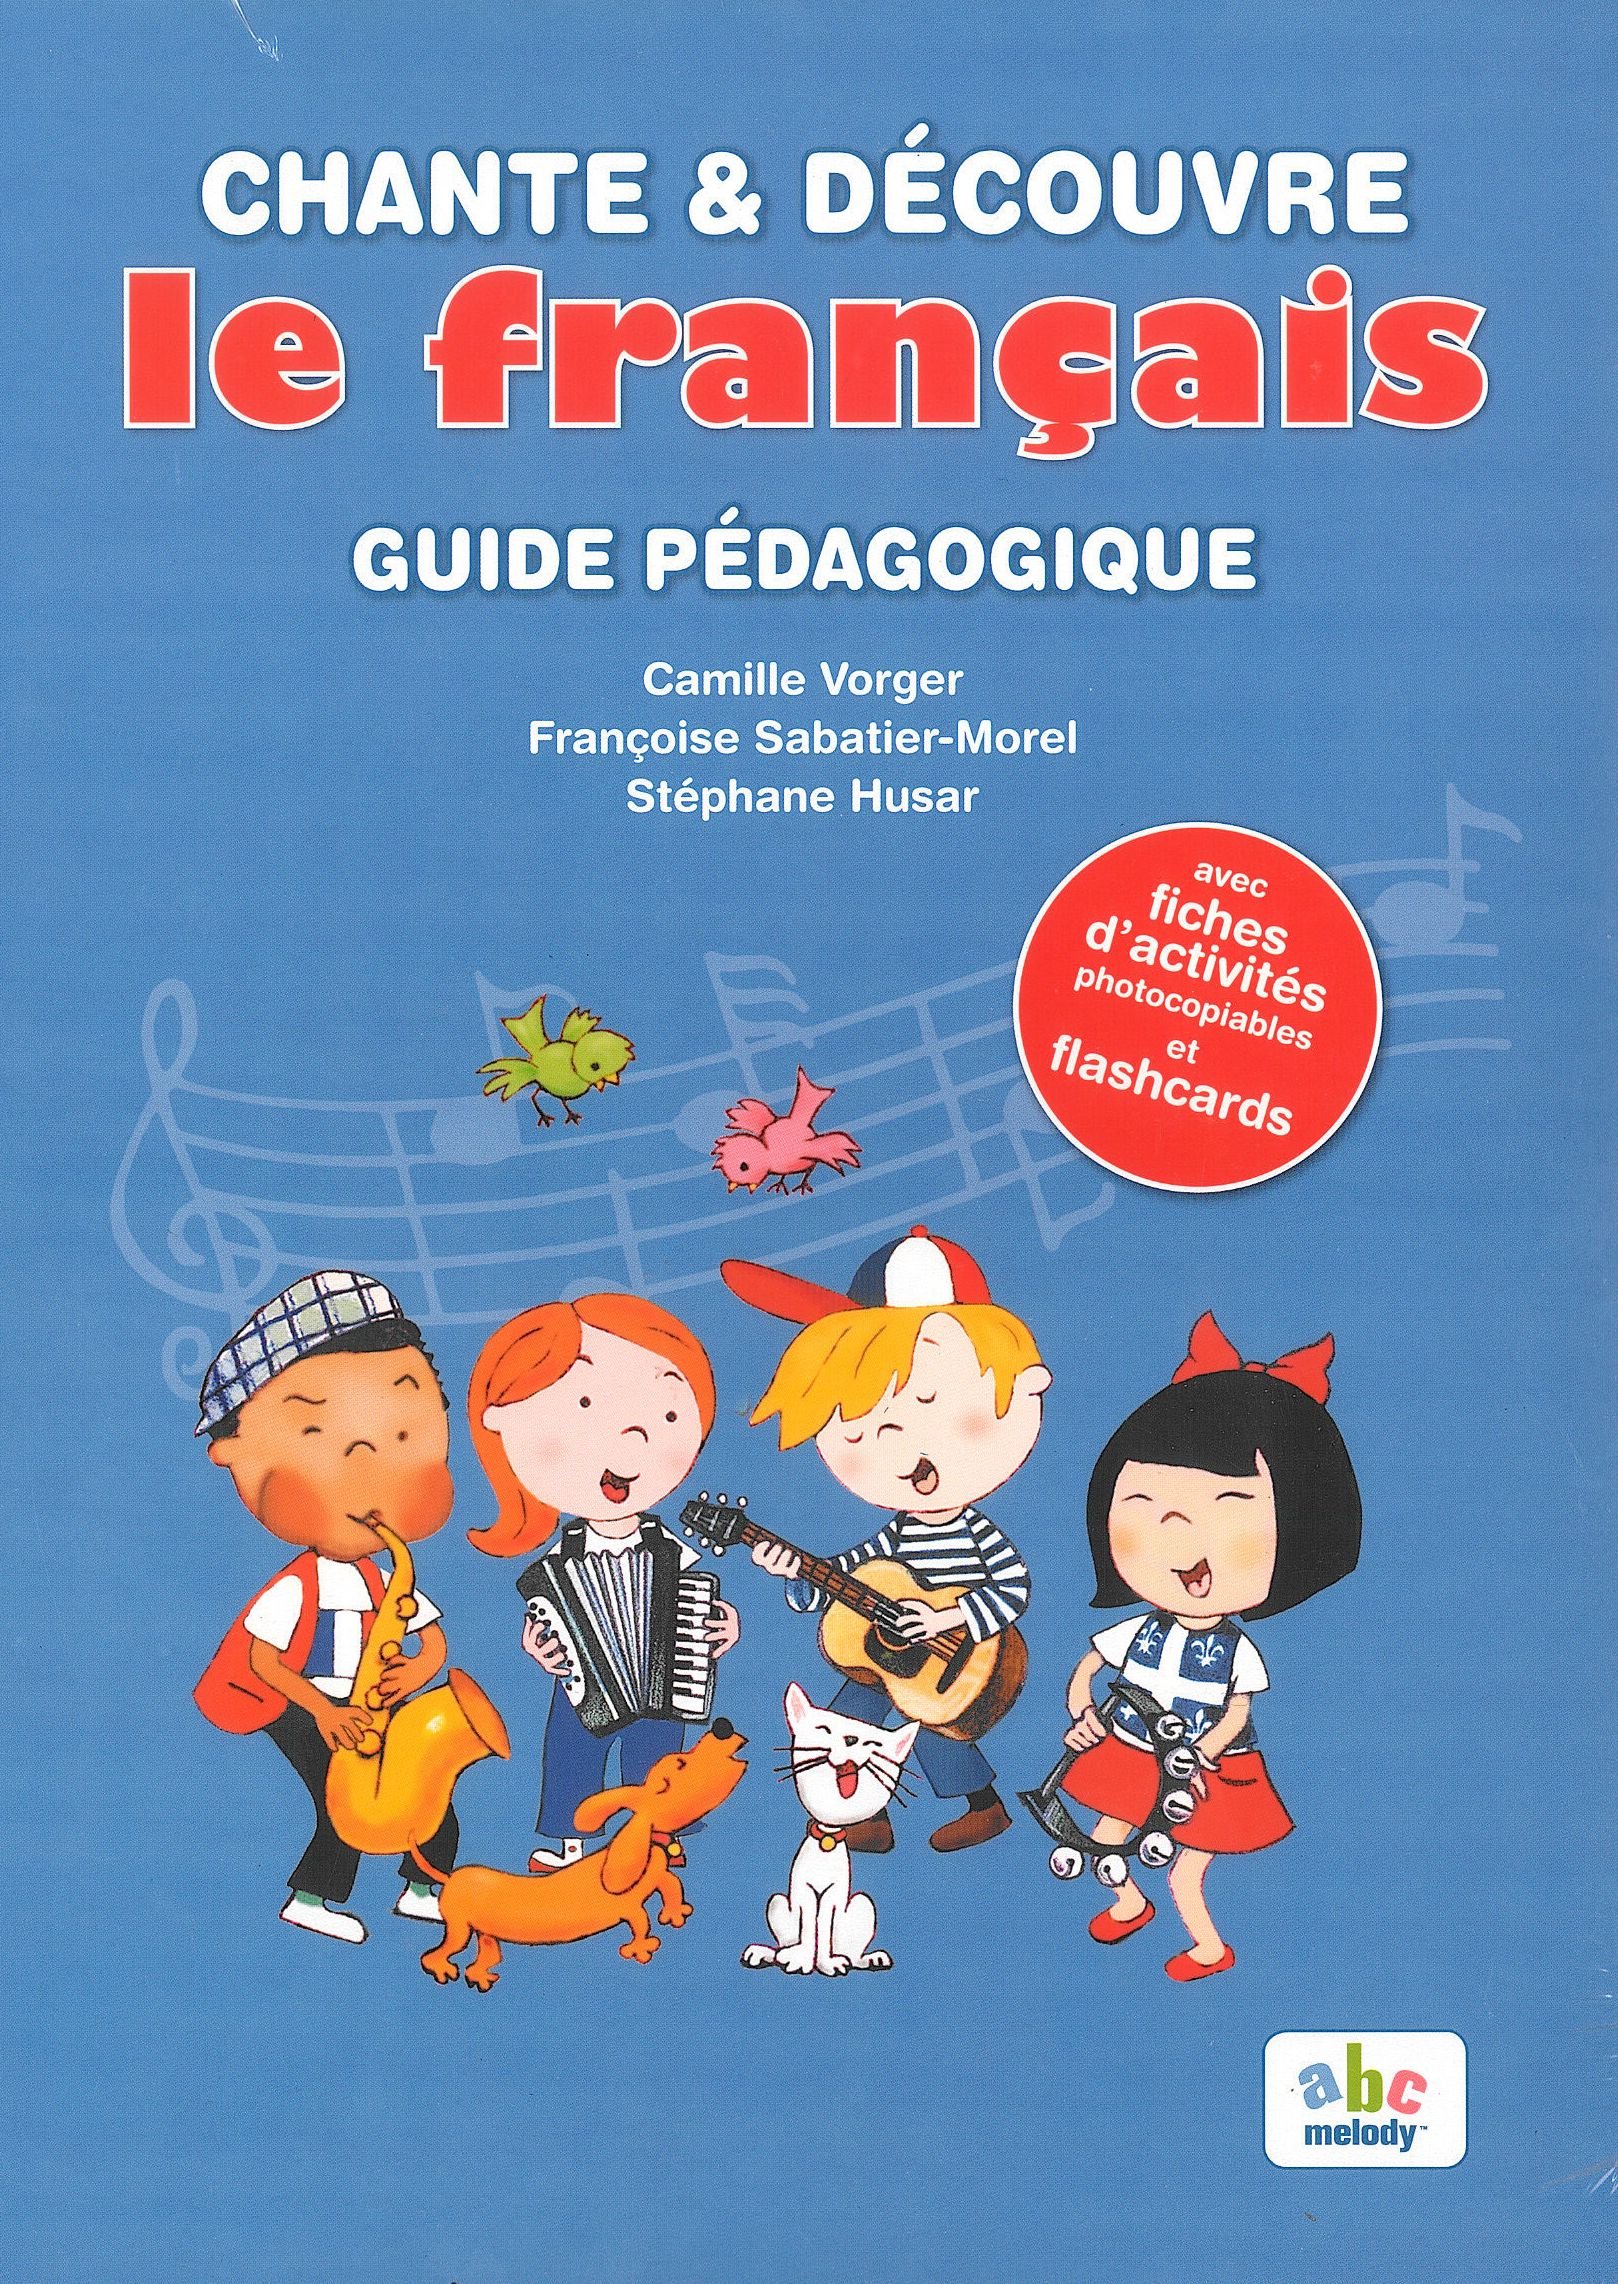 Chante & Découvre le français - Guide Pedagogique